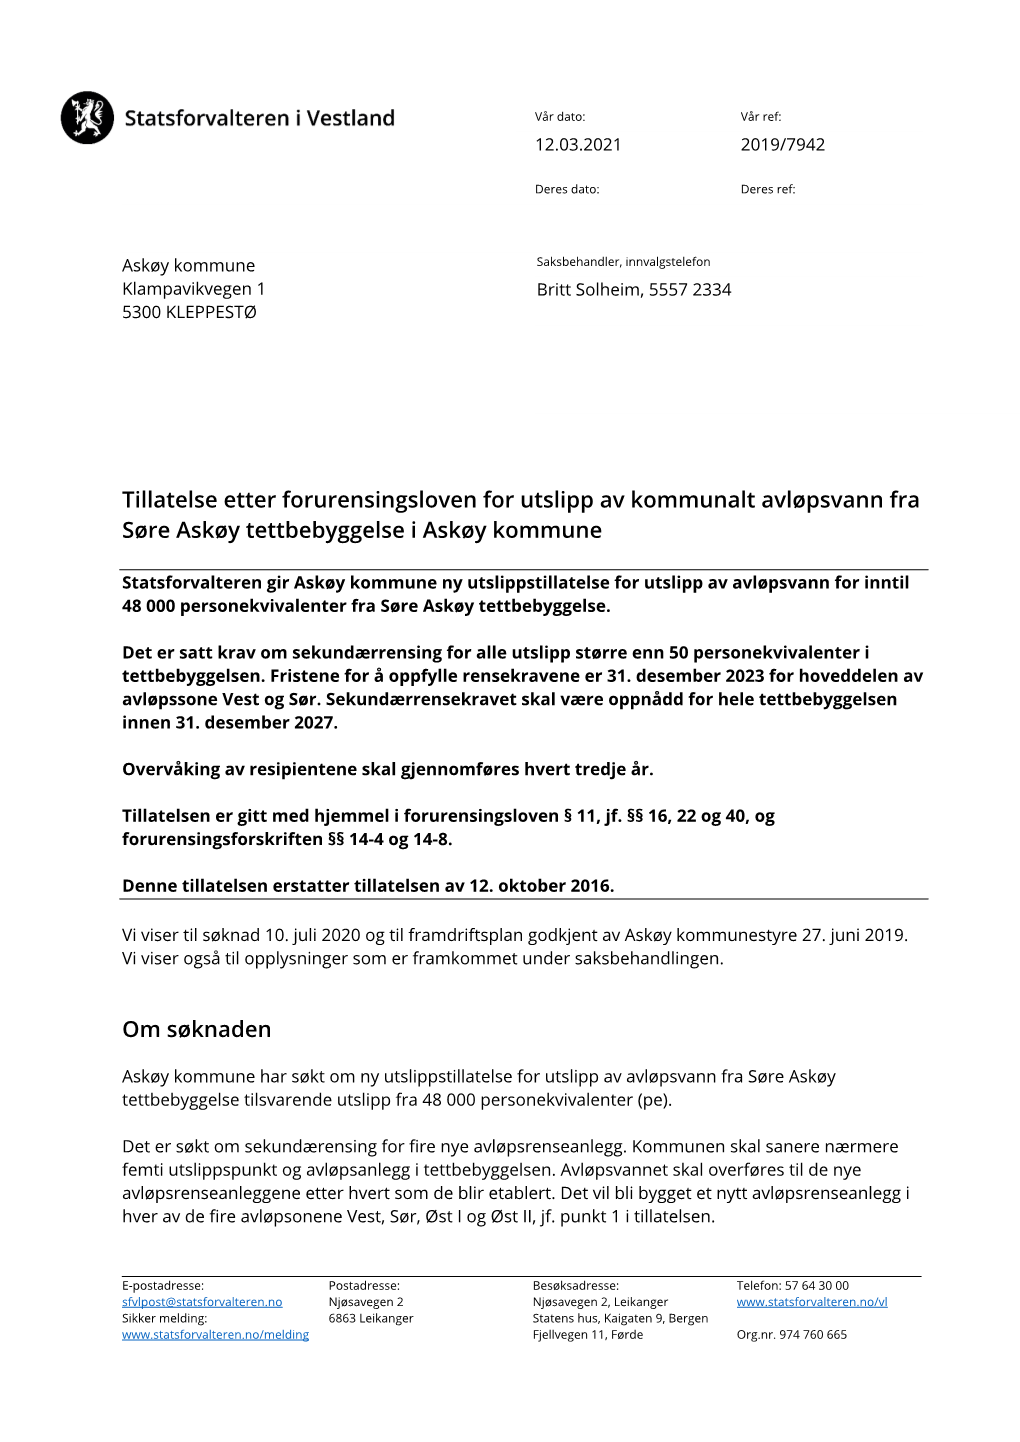 Tillatelse Etter Forurensingsloven for Utslipp Av Kommunalt Avløpsvann Fra Søre Askøy Tettbebyggelse I Askøy Kommune Om